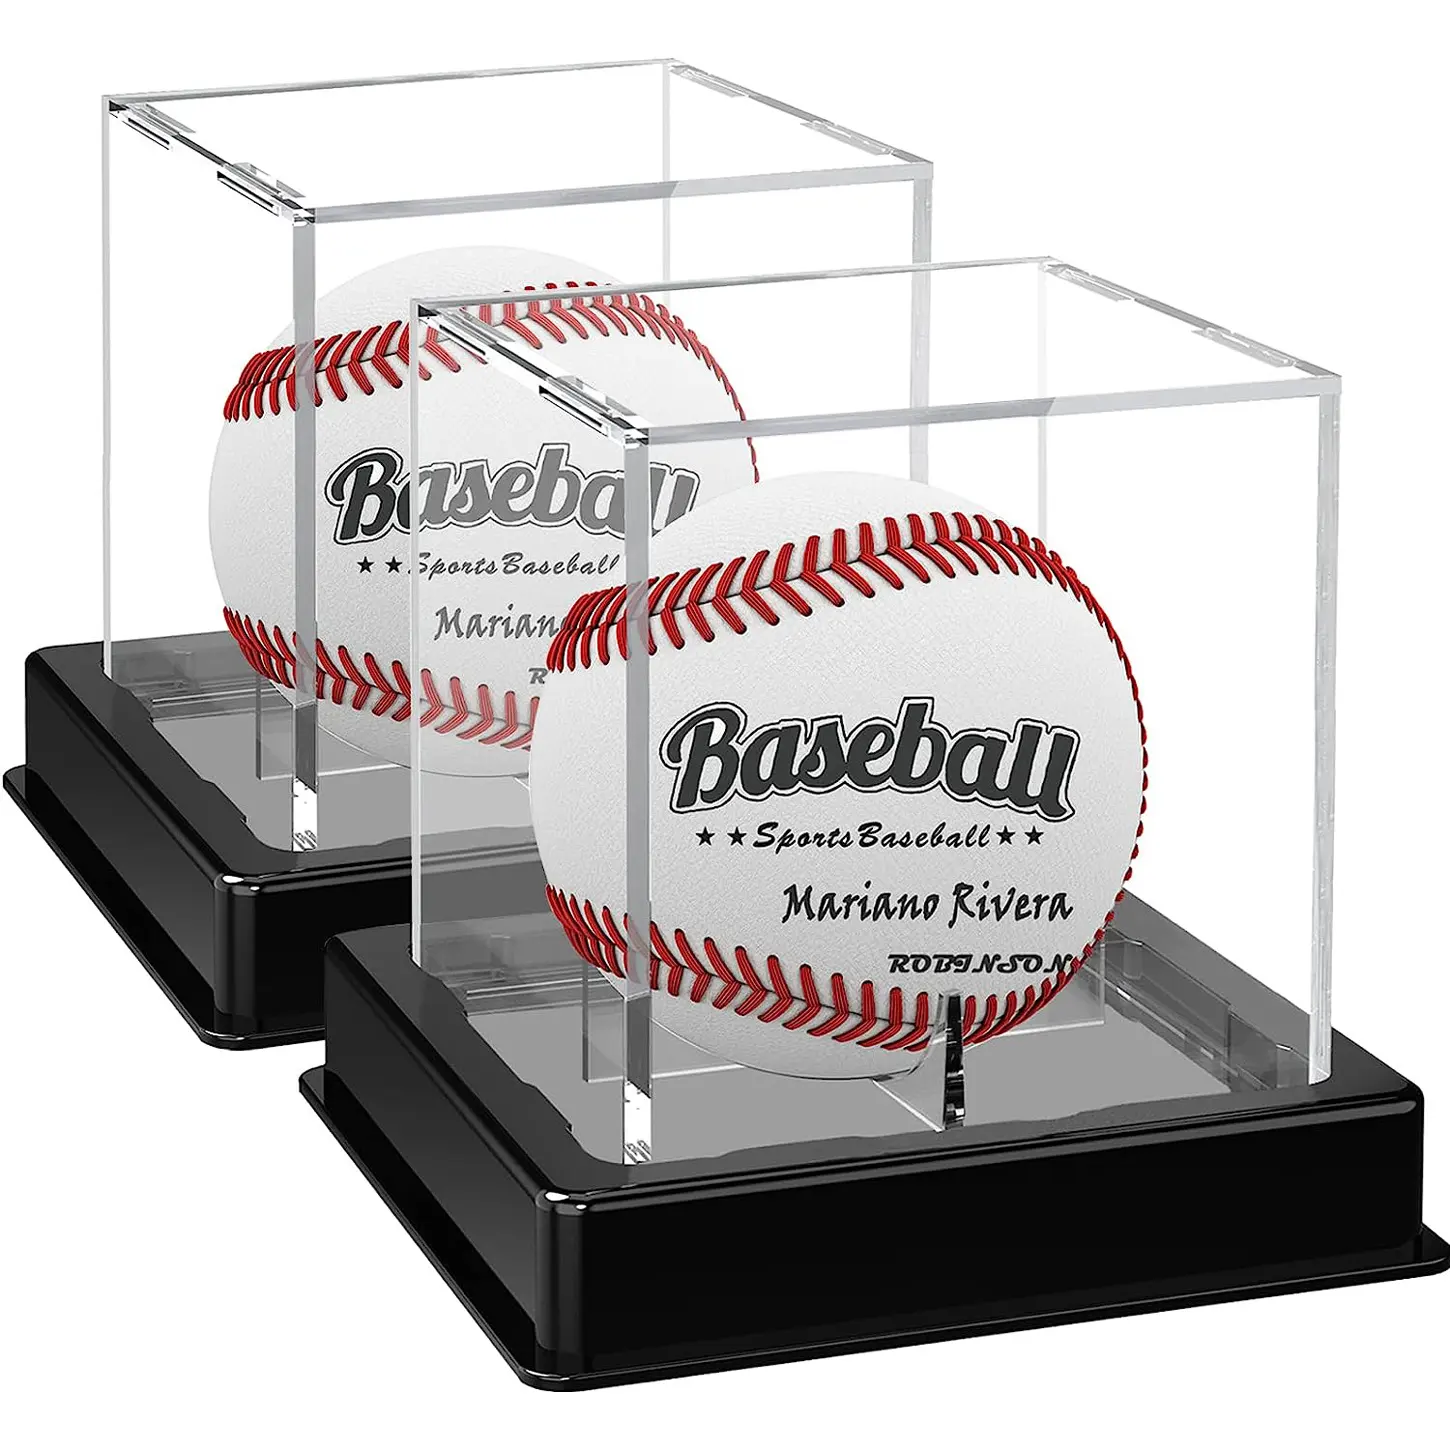 Kotak Display kubus Baseball, penyangga bisbol, konter bening akrilik kustom